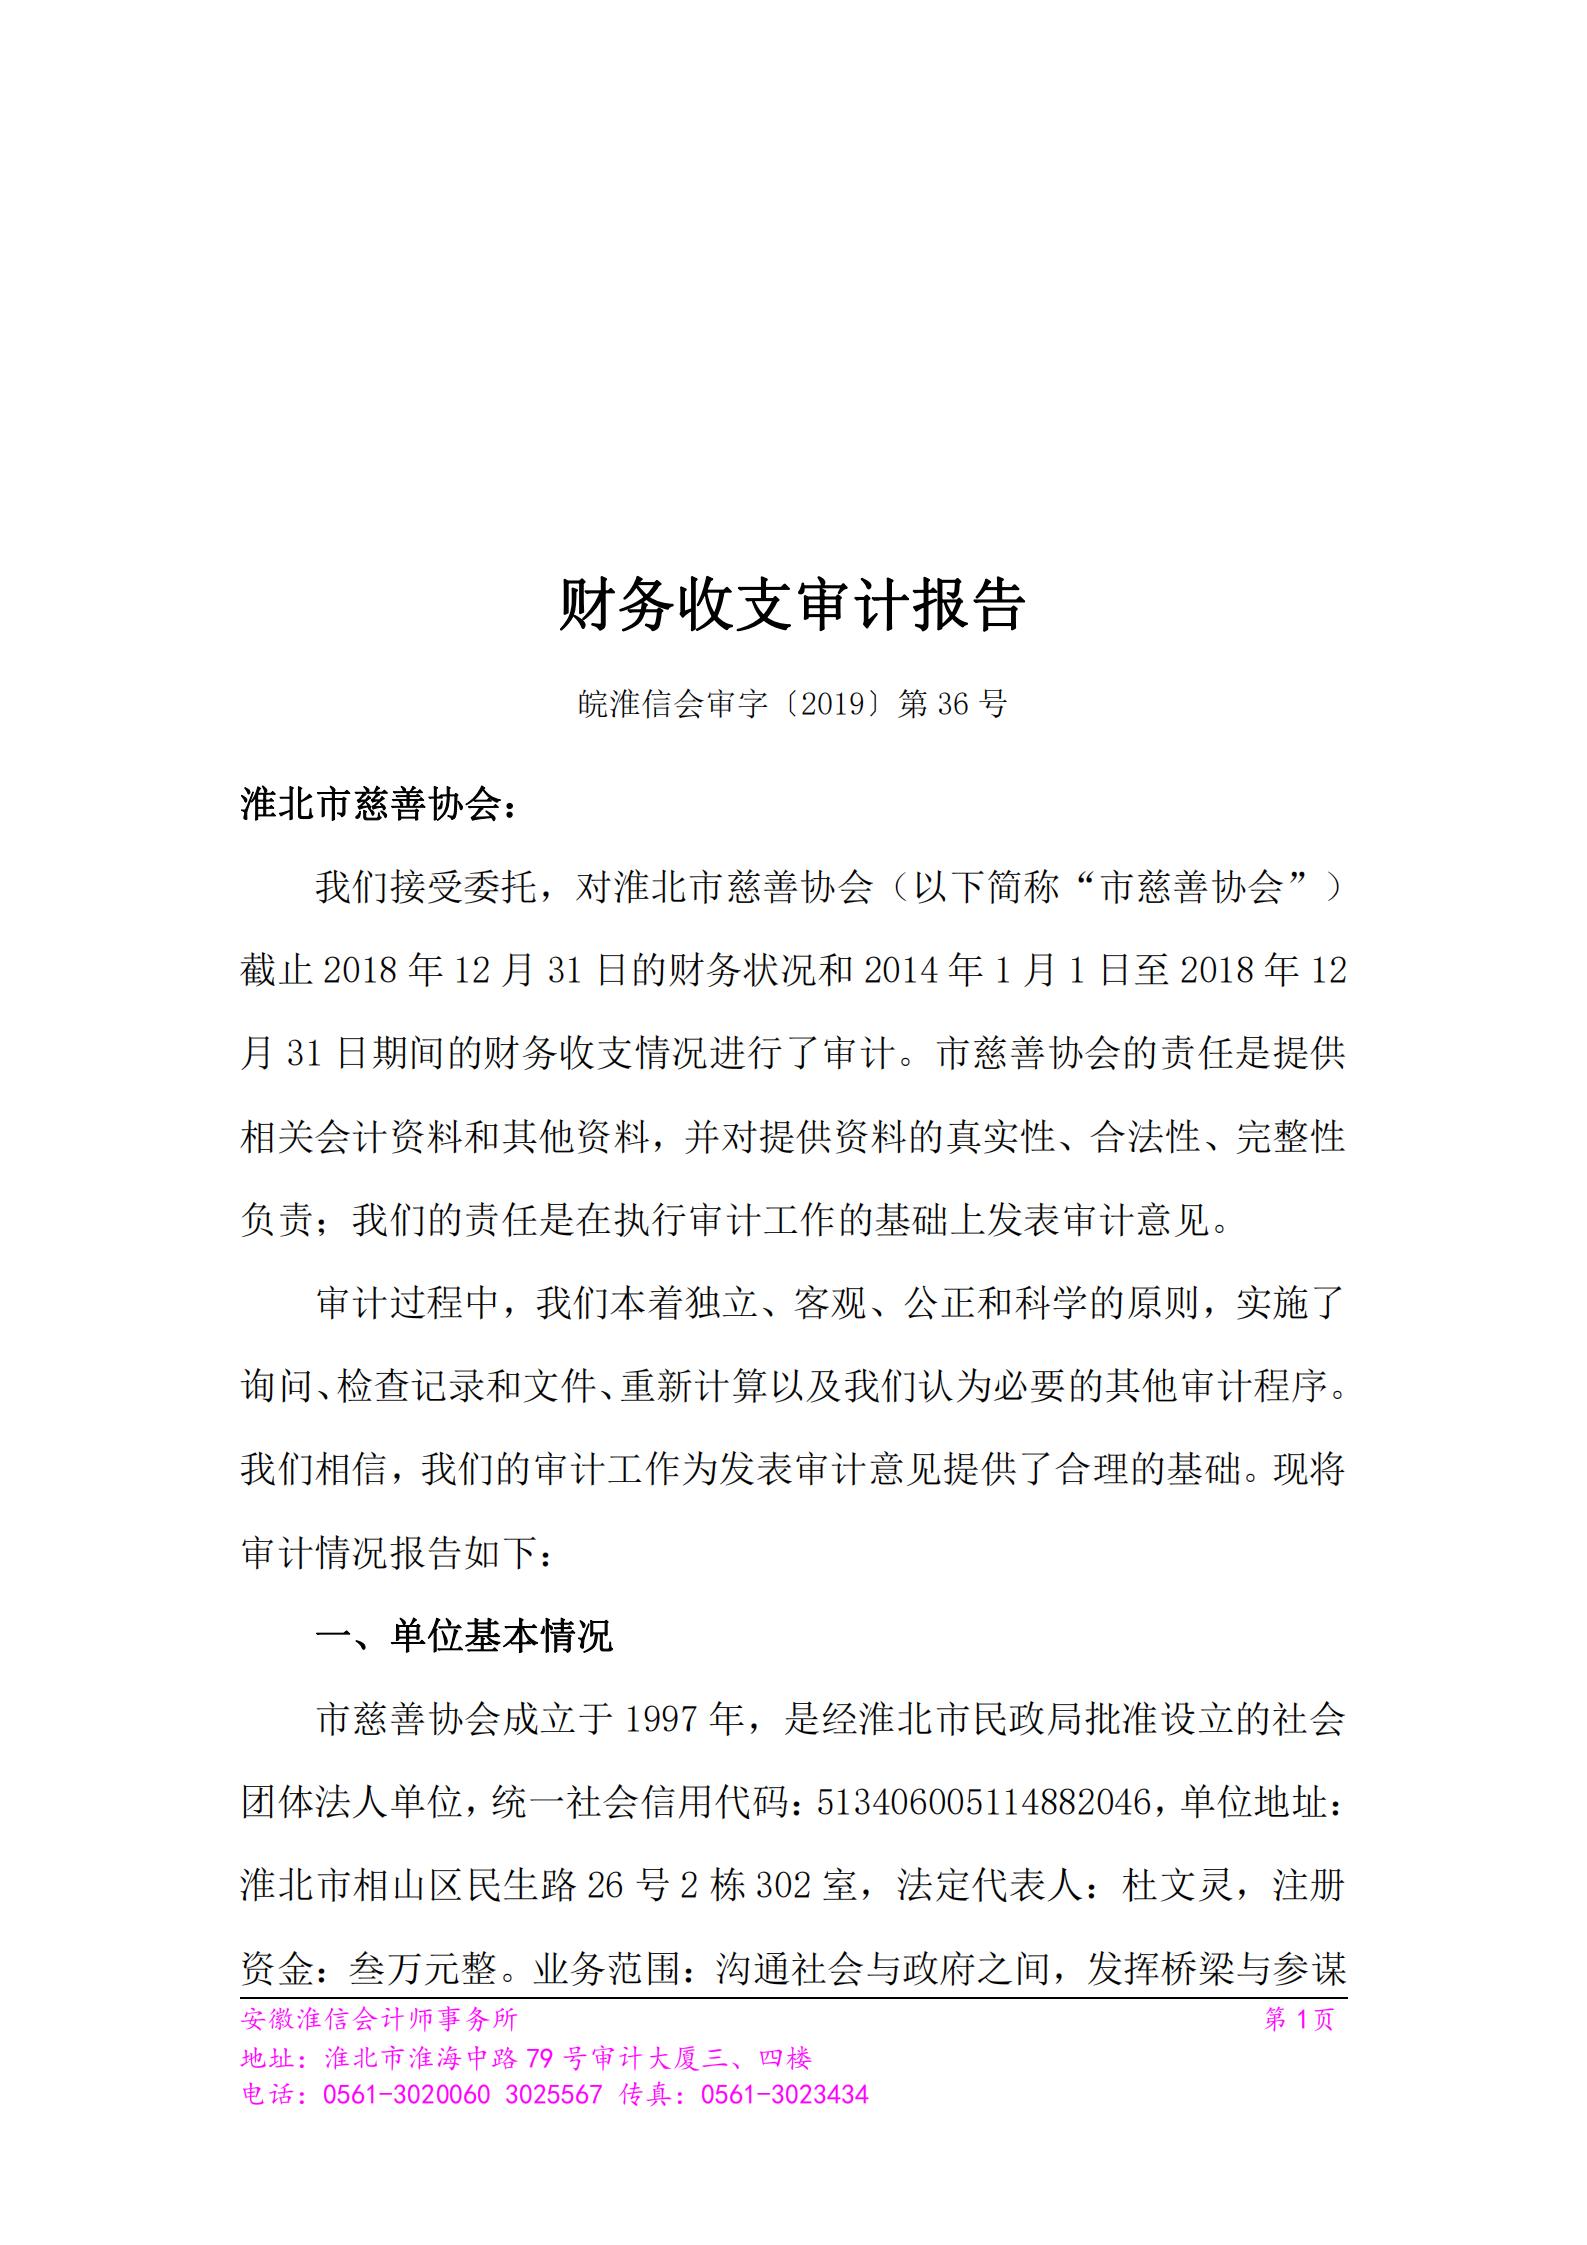 第三届理事会杜文灵会长离任审计报告（2014年1月--2019年9月）_00.jpg